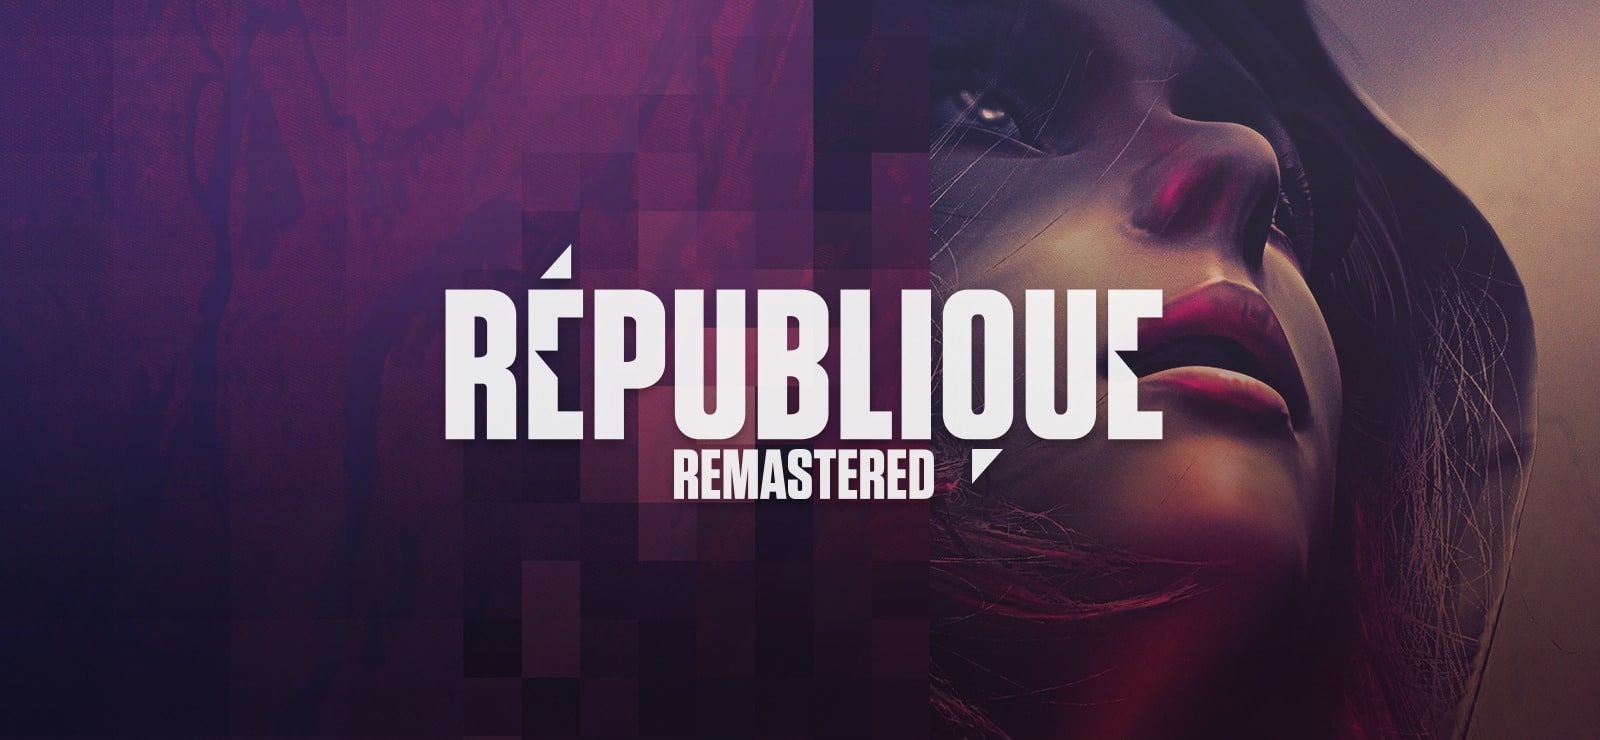 republique remastered1